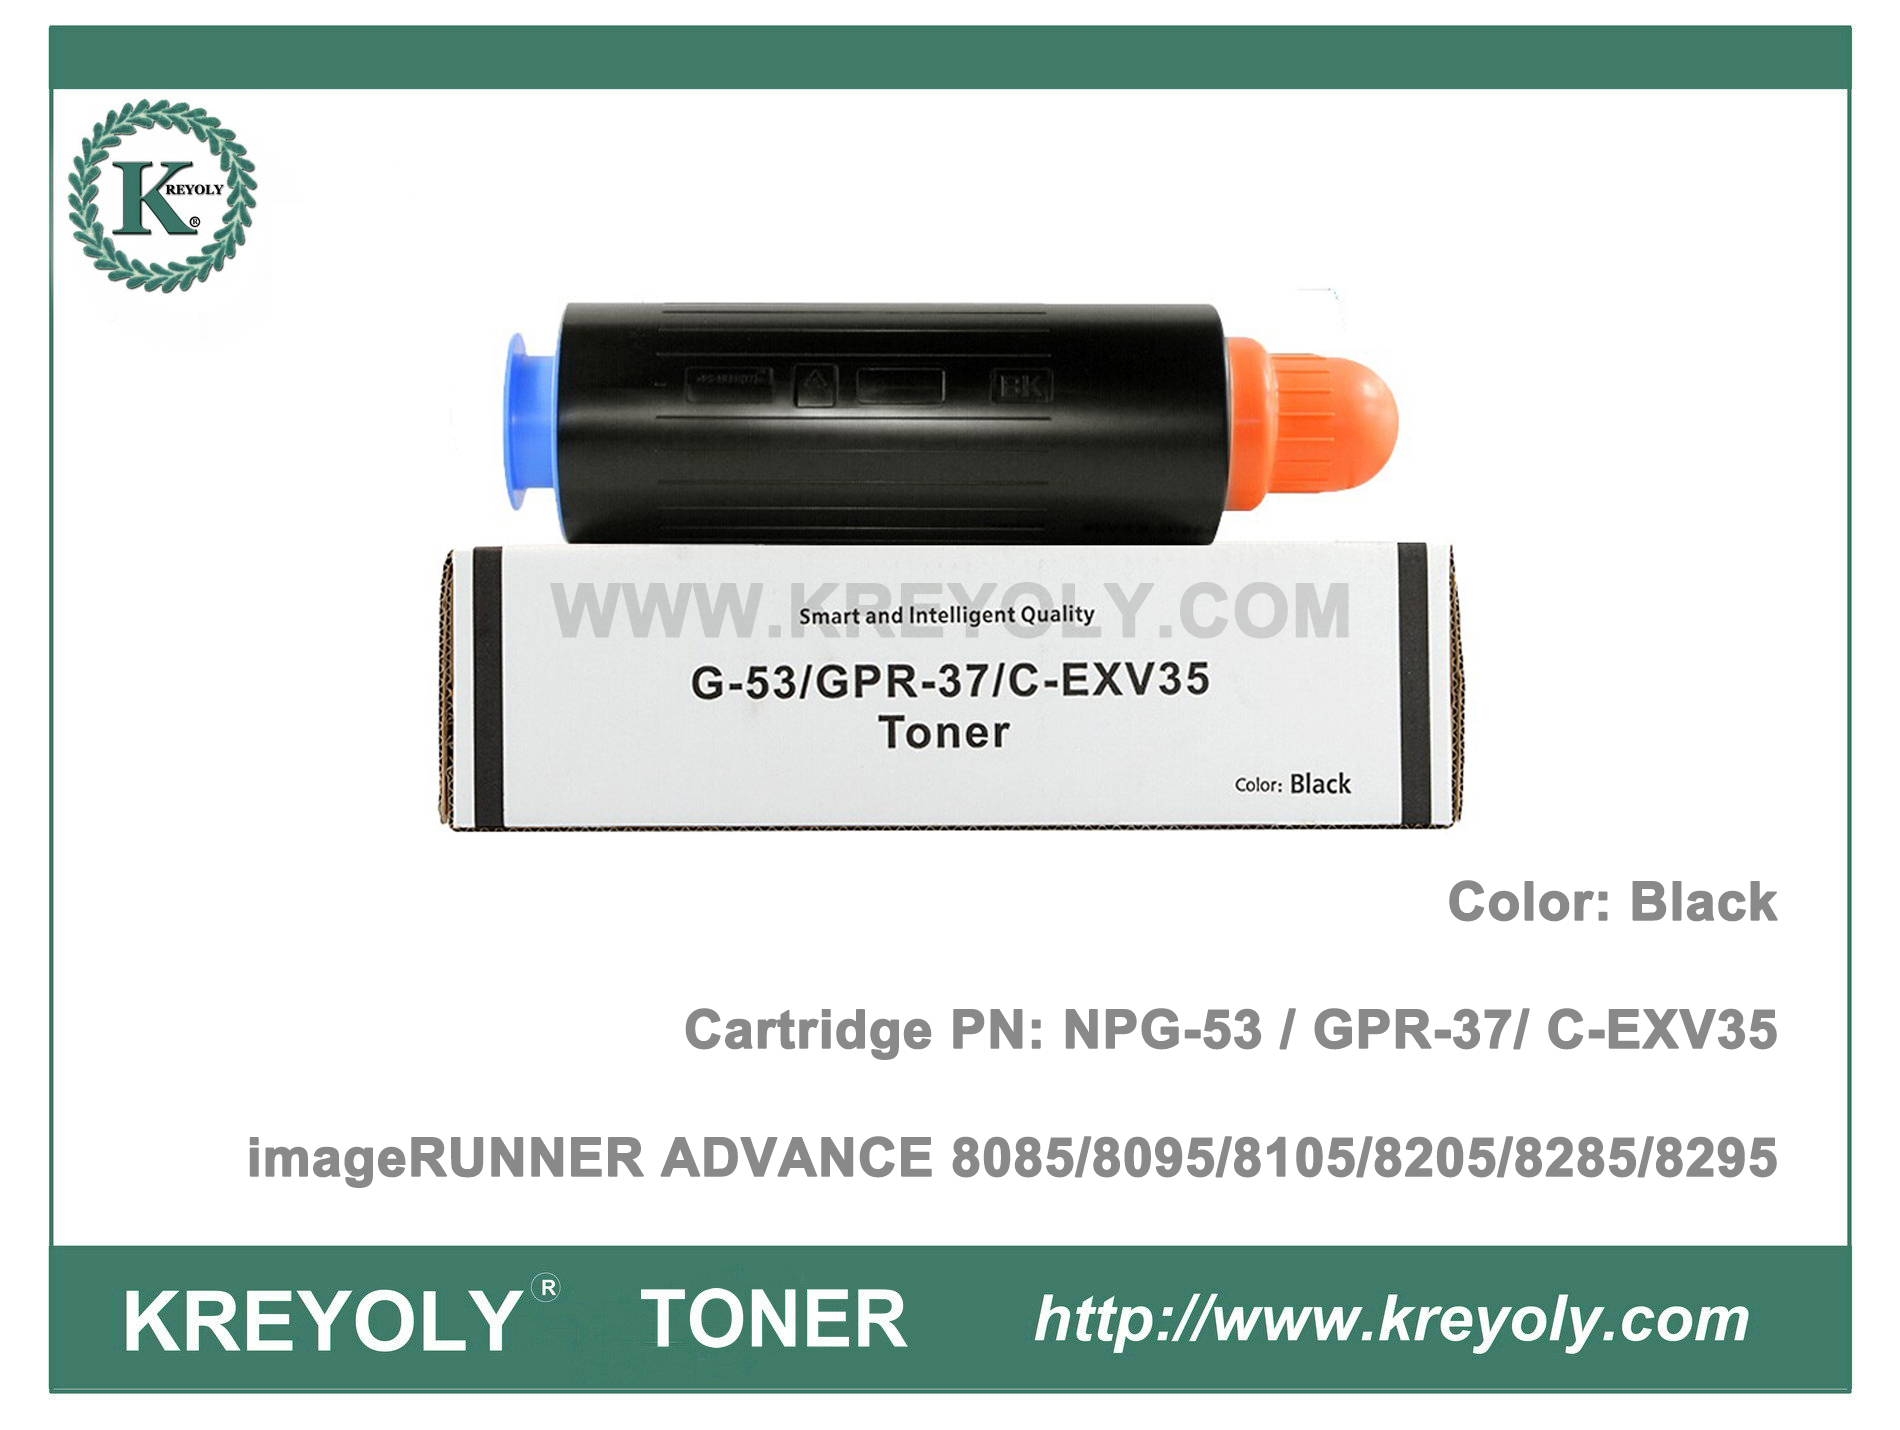 Canon Toner Cartridge NPG53 GPR37 C-EXV35 for ImageRUNNER ADVANCE 